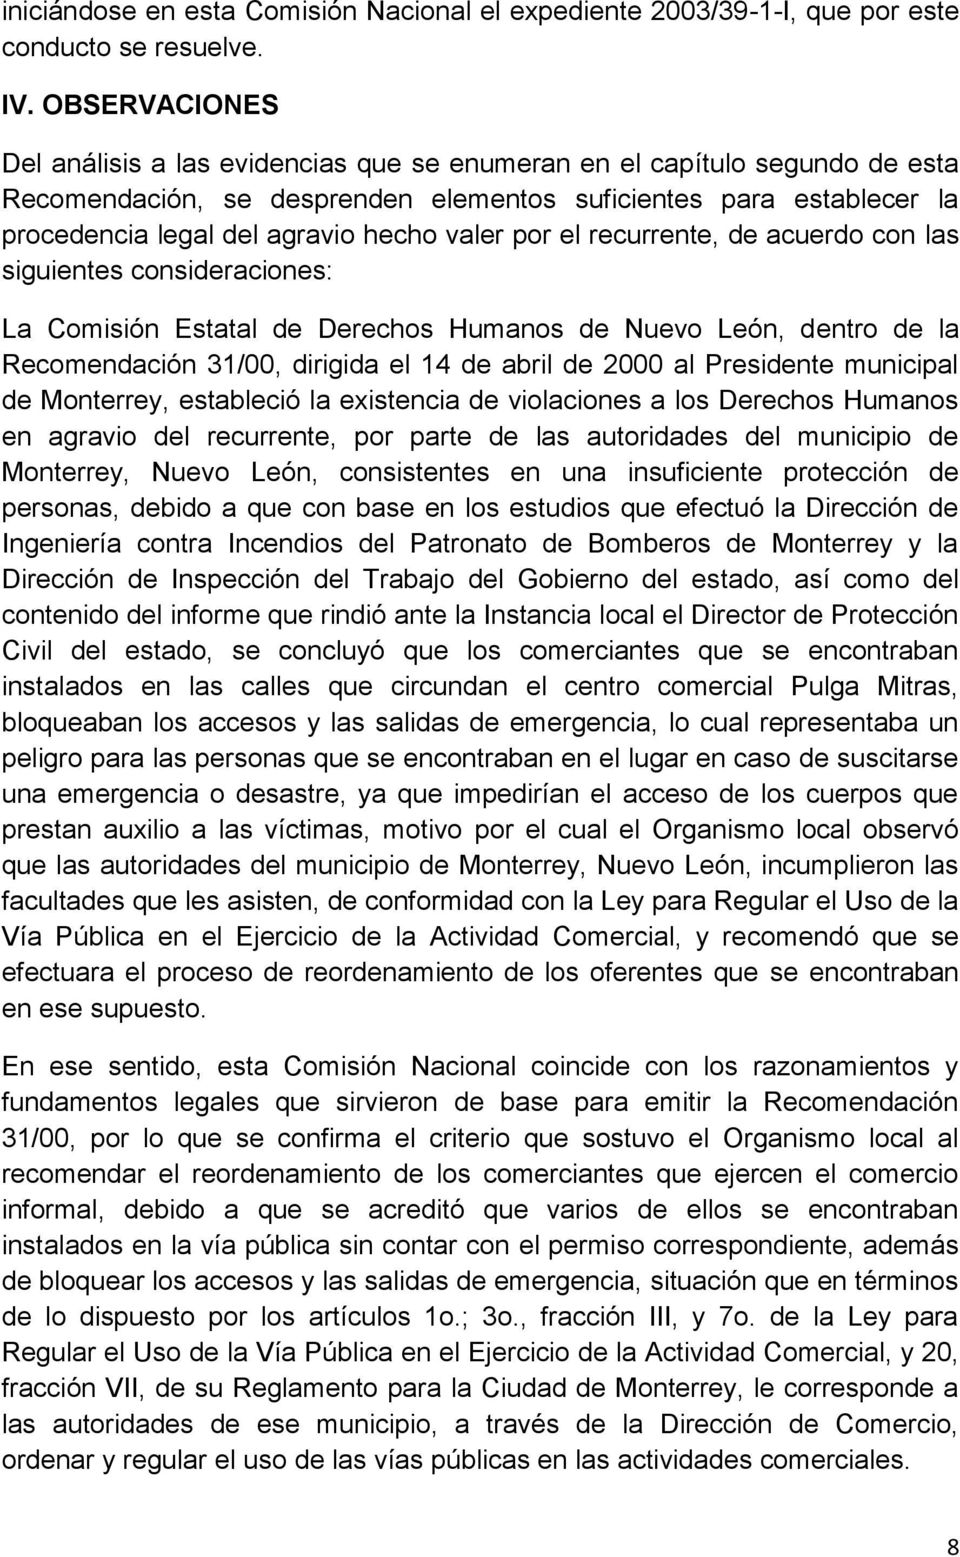 valer por el recurrente, de acuerdo con las siguientes consideraciones: La Comisión Estatal de Derechos Humanos de Nuevo León, dentro de la Recomendación 31/00, dirigida el 14 de abril de 2000 al